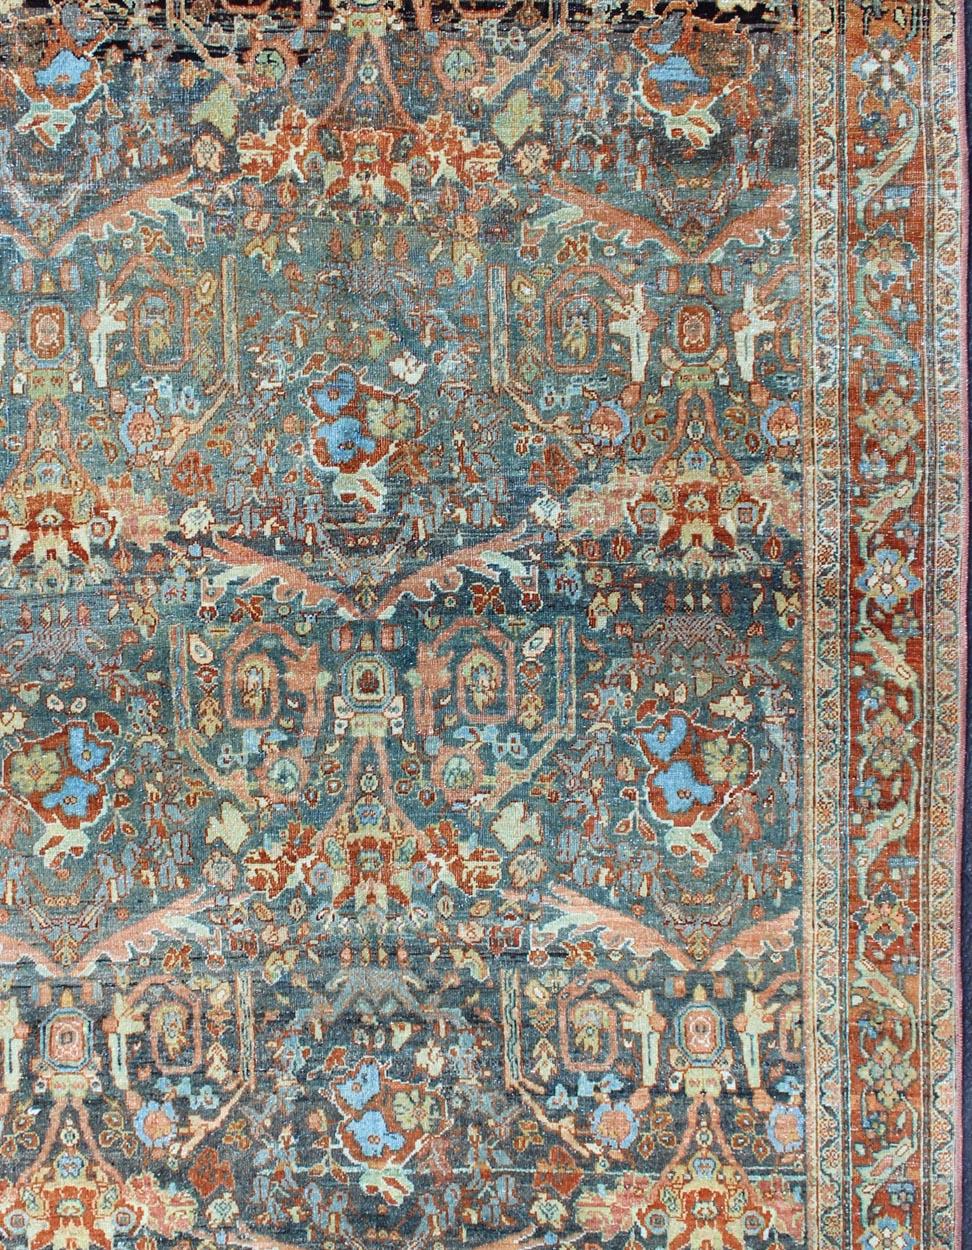 Tapis persan antique Tabriz à motifs floraux
Tapis de Tabriz du début du 20e siècle avec un motif floral sur toute la surface, tapis SUS-1909-434, pays d'origine / type : Iran / Tabriz, vers 1910

Ce tapis antique de Tabriz, datant de la Perse